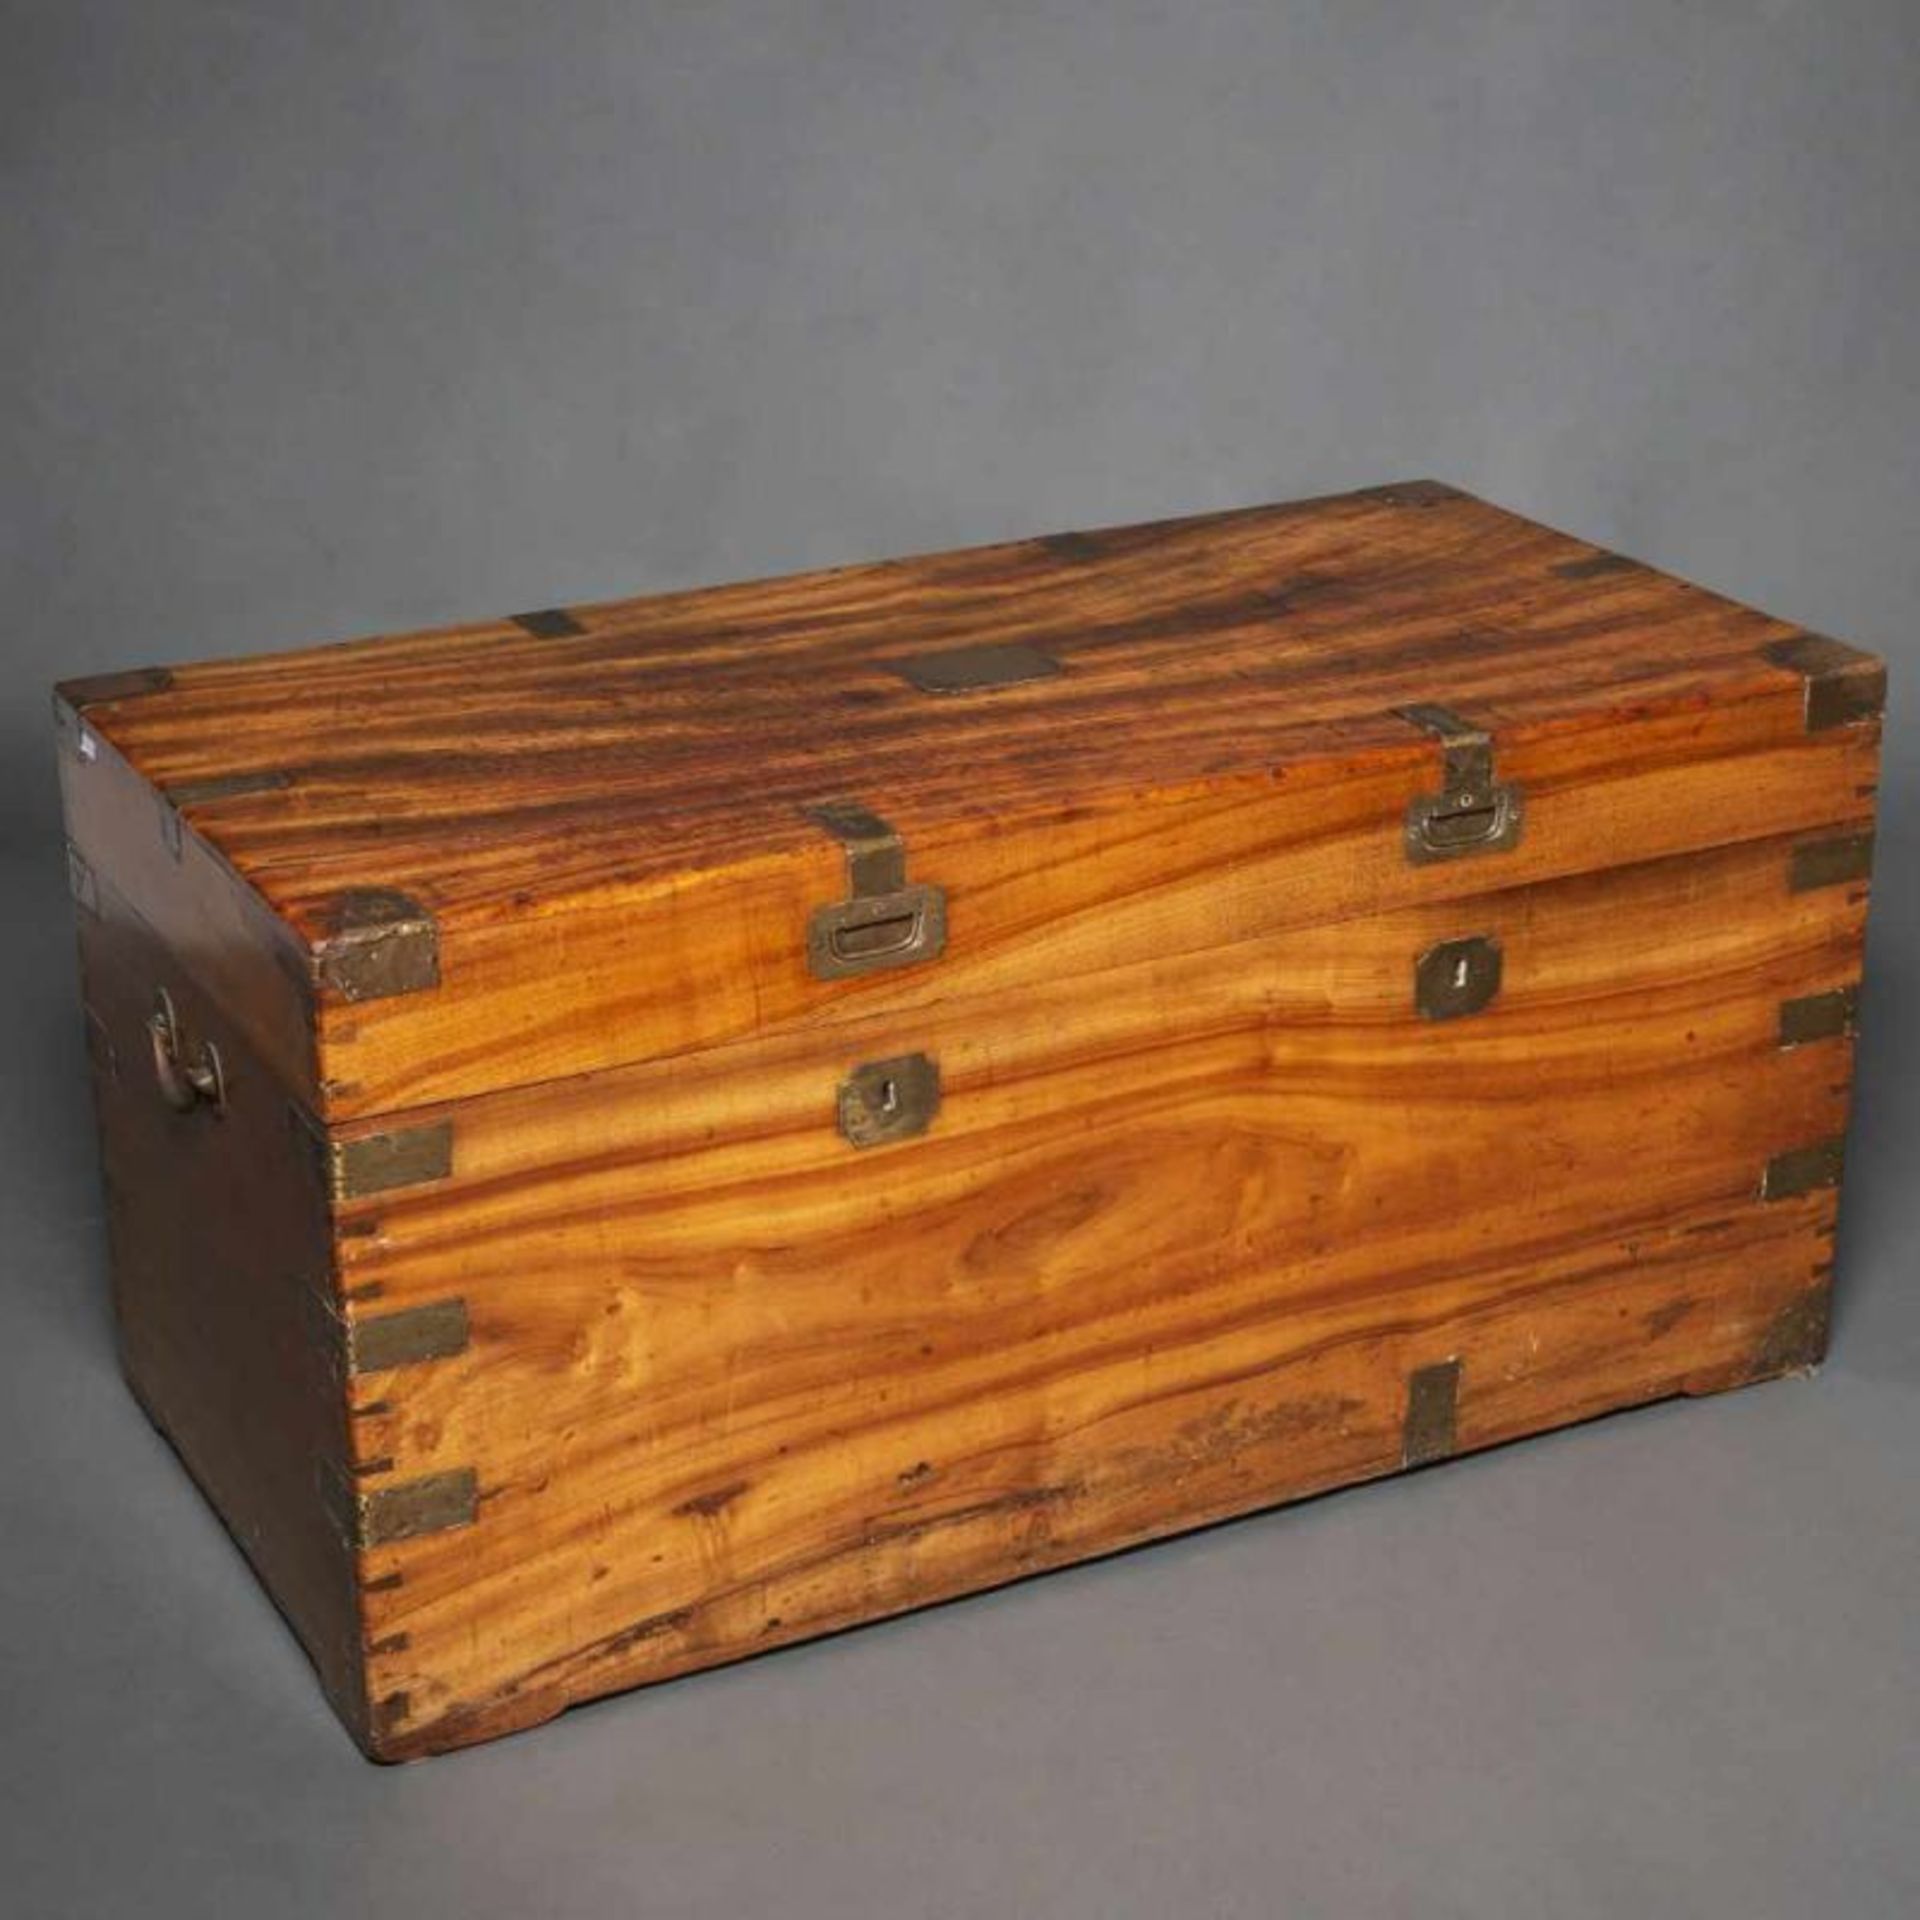 Baúl en madera de alcanfor del siglo XIXPresenta aplicaciones y toradores en latón.Buen estado de